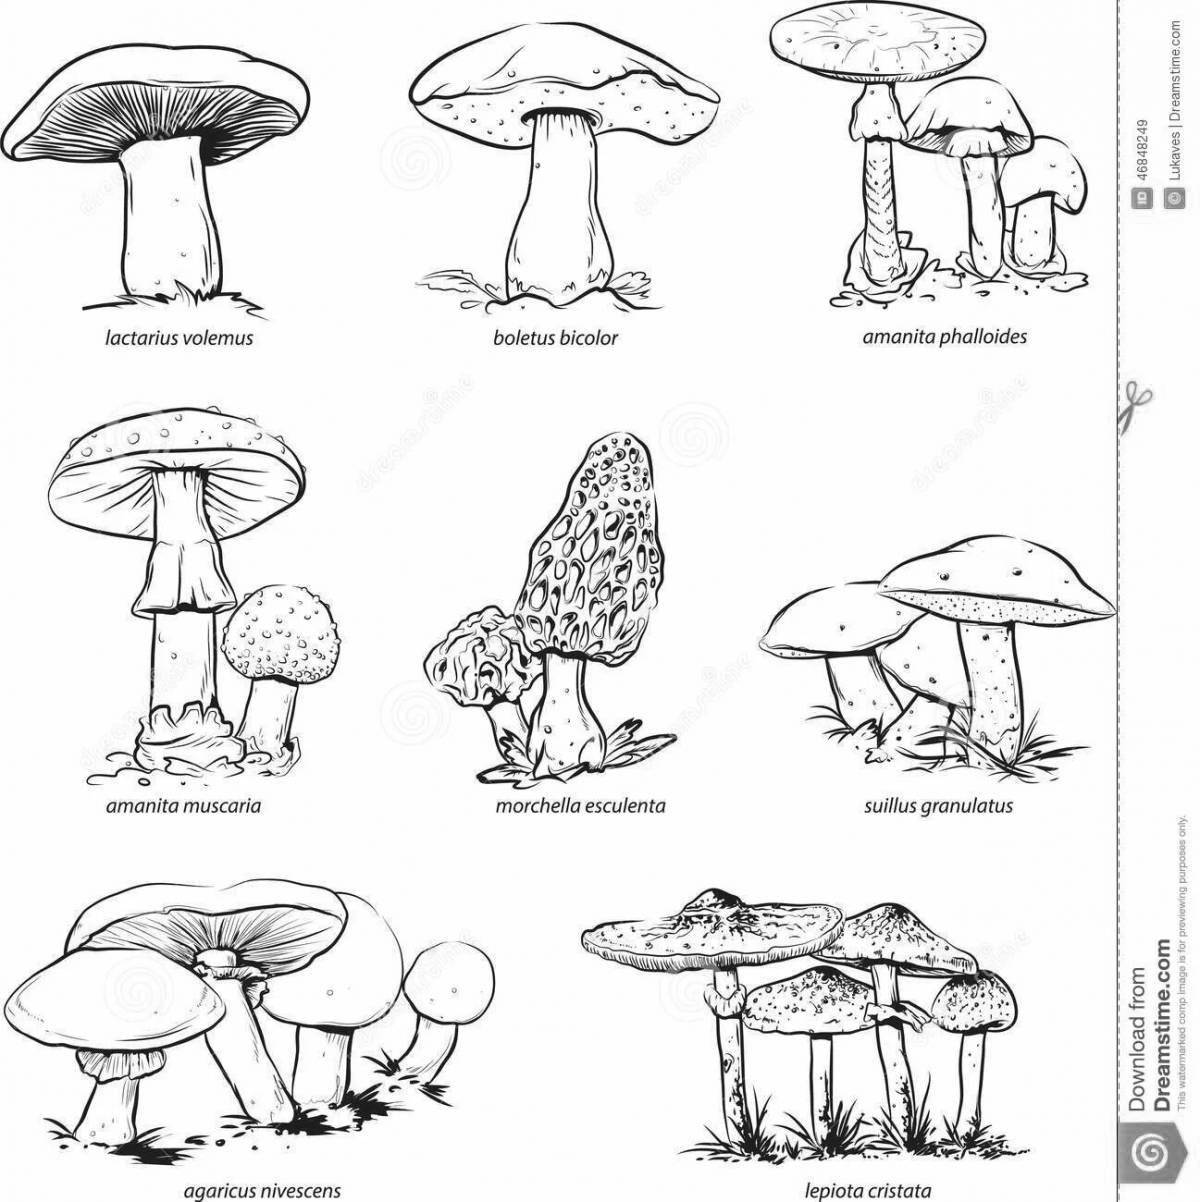 Coloring book fascinating inedible mushrooms